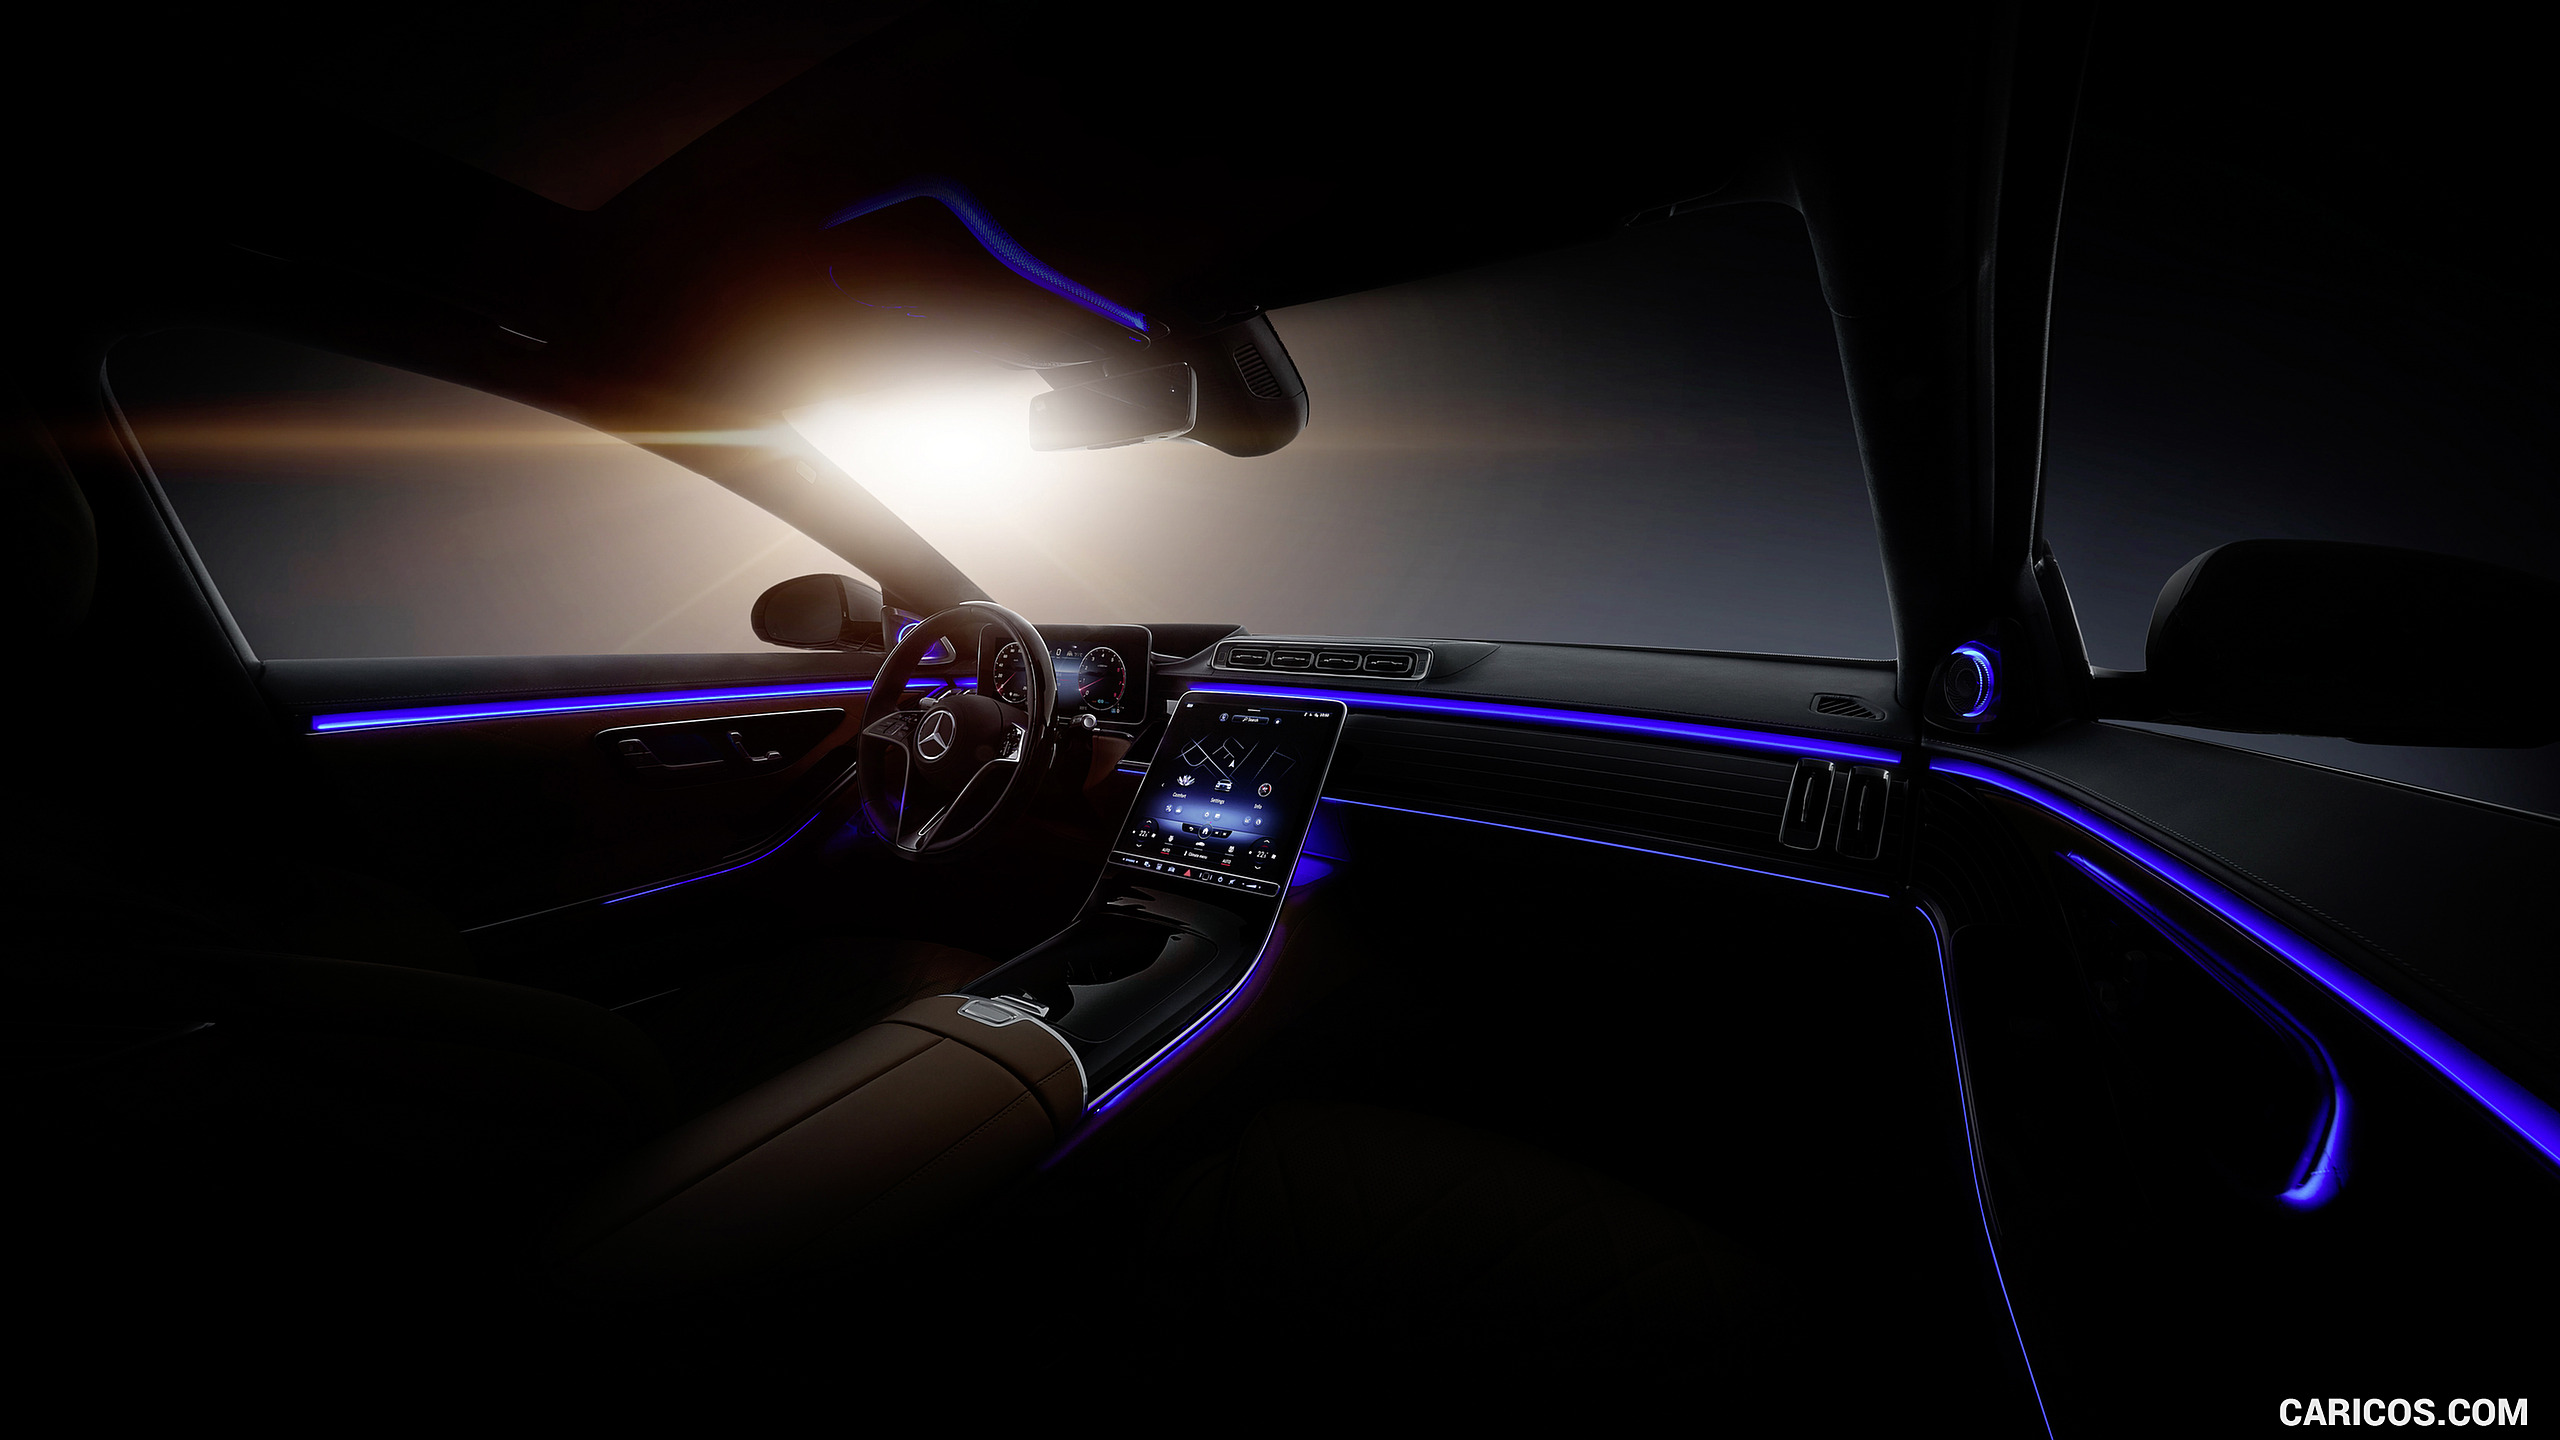 2021 Mercedes-Benz S-Class - Ambient Lighting, #131 of 316